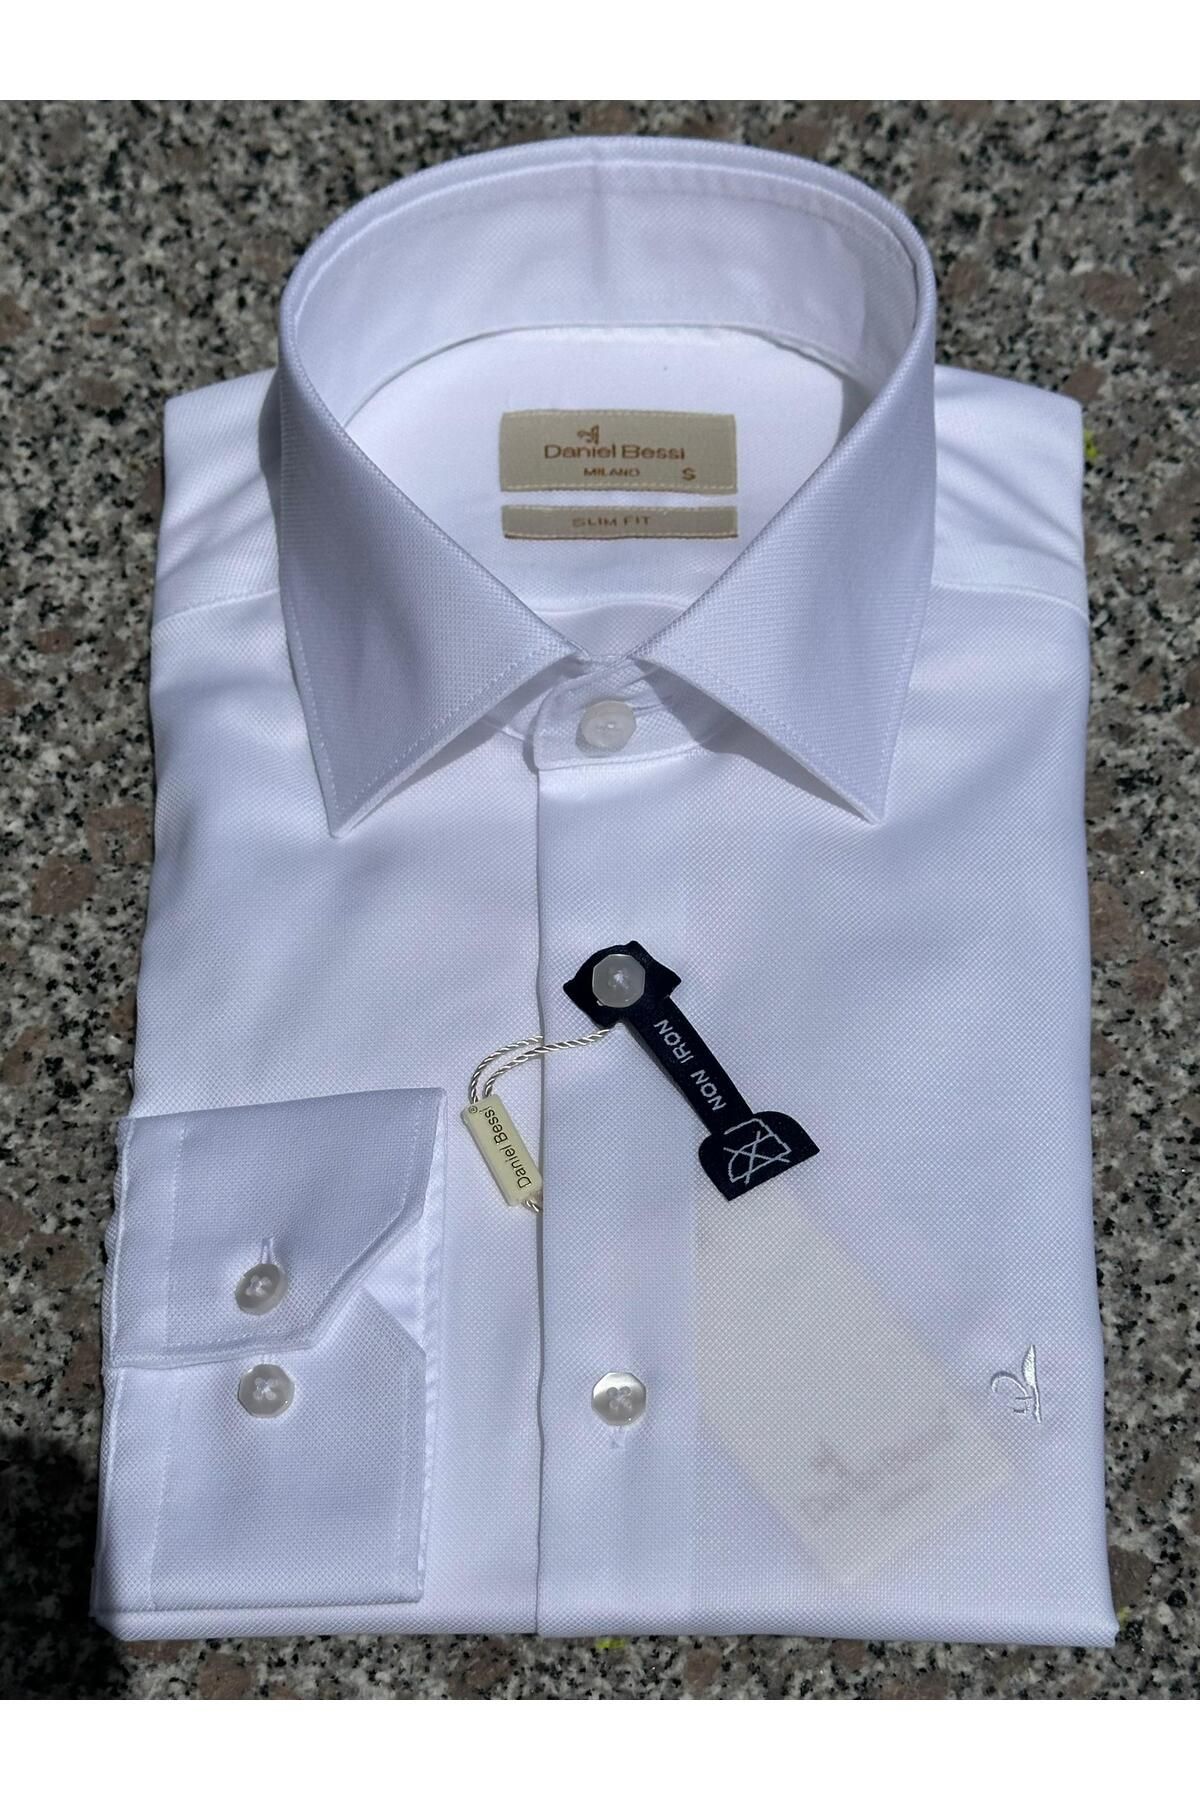 Daniel Bessi Uzun Kollu Slim Fit %100 Pamuk Twill Non-Iron Ütü Gerektirmeyen Kırışmayan Klasik Erkek Gömlek